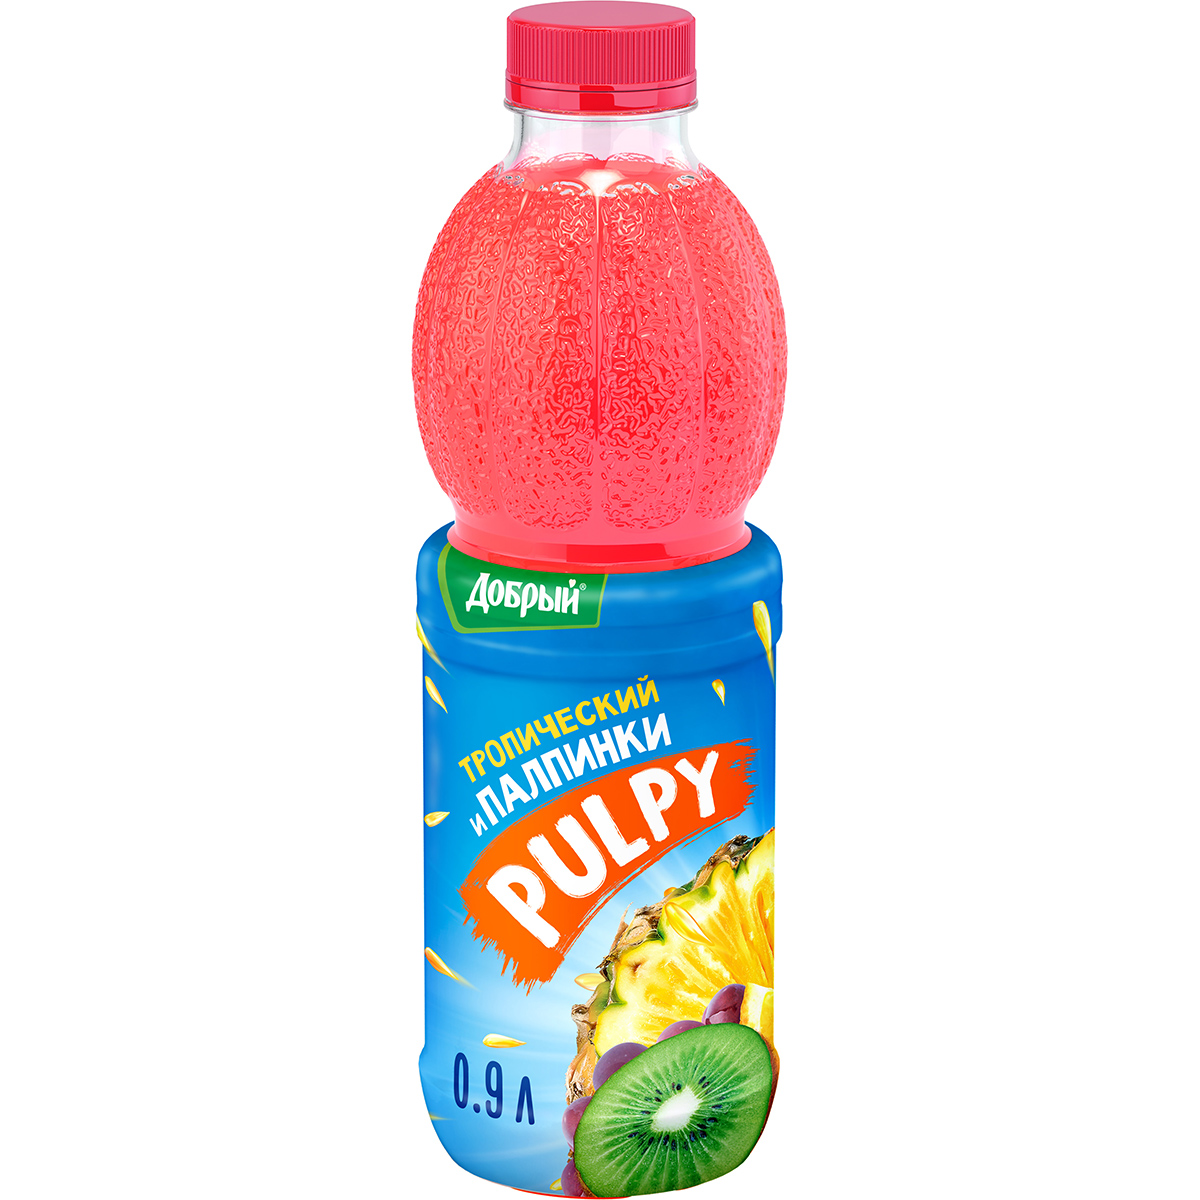 Напиток Pulpy сокосодержащий Тропический с мякотью 0,9 л